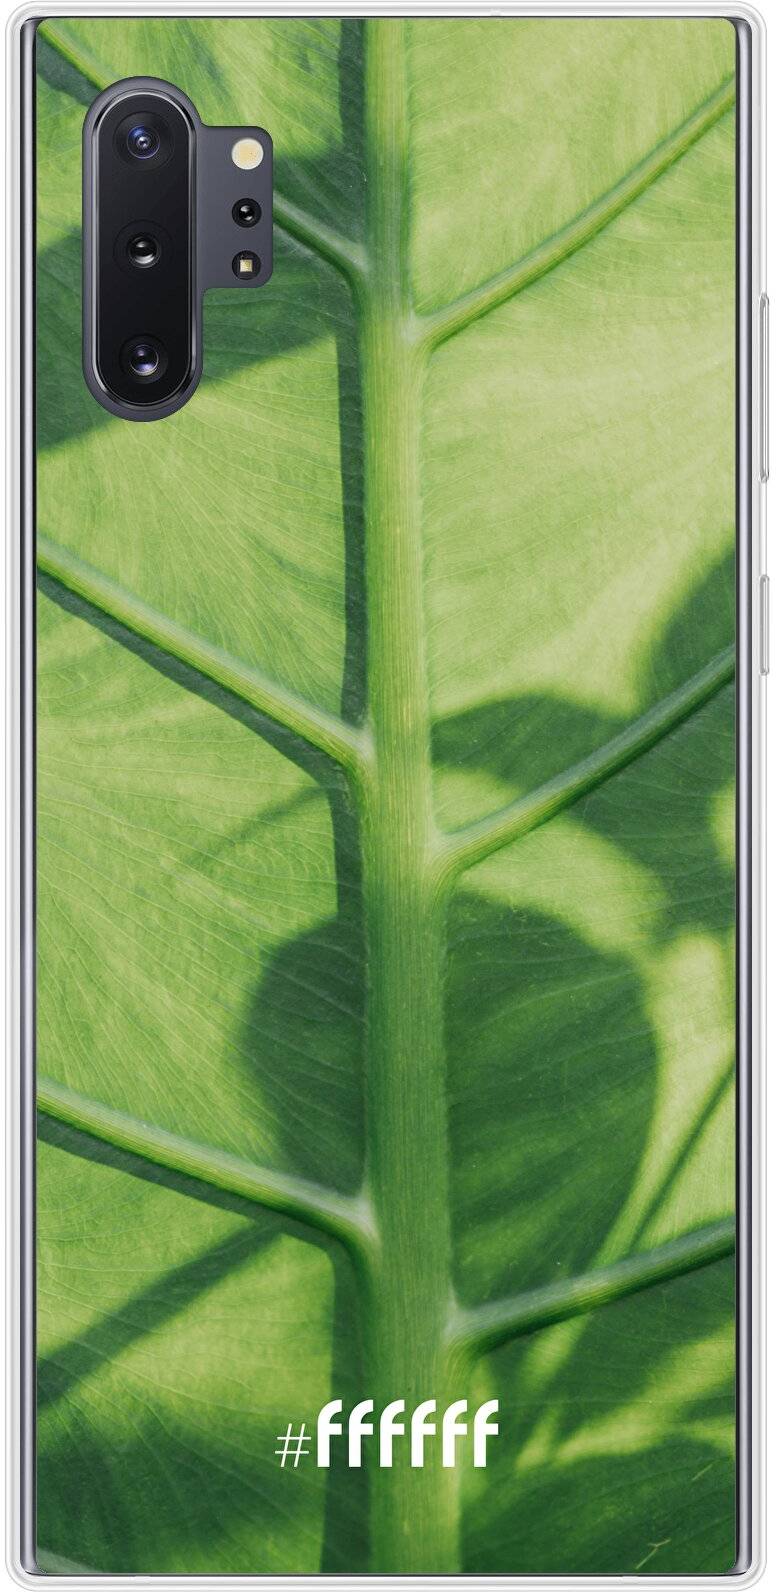 Leaves Macro Galaxy Note 10 Plus